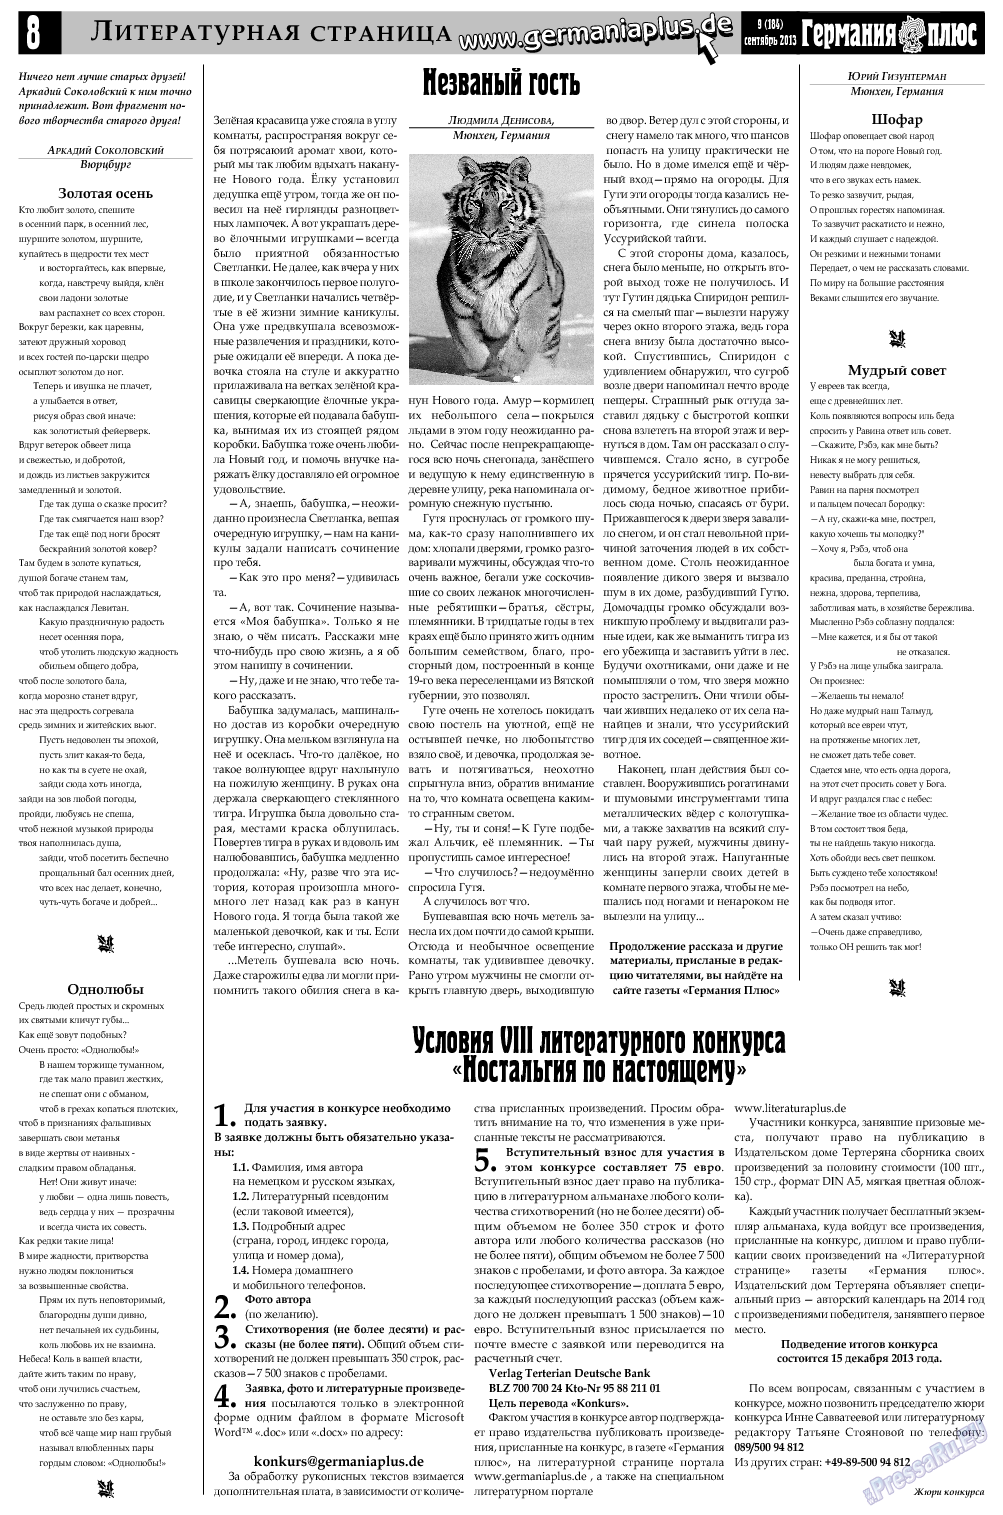 Германия плюс, газета. 2013 №9 стр.8